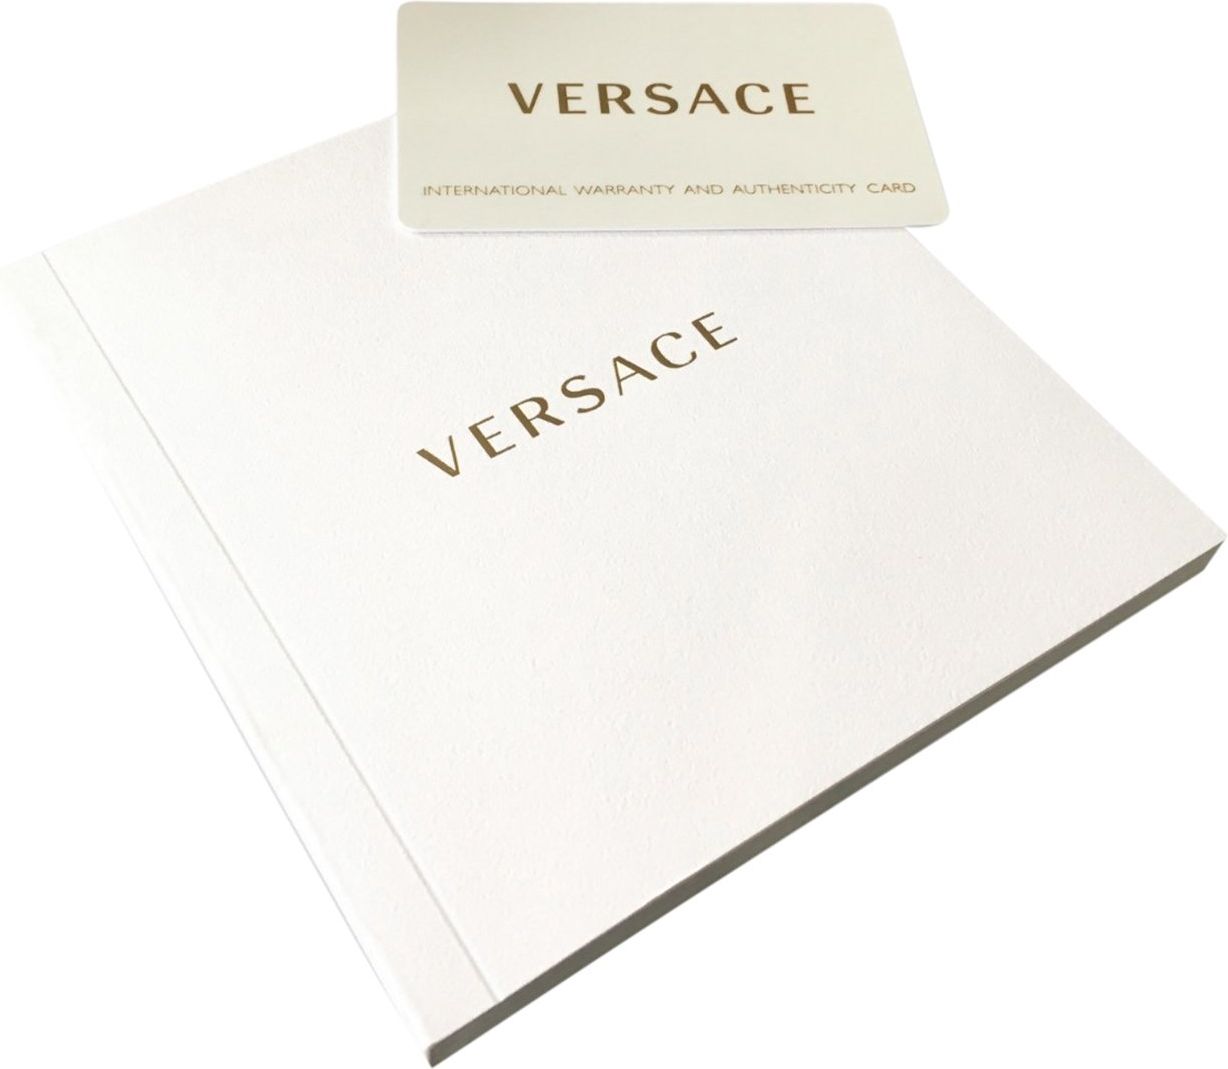 Versace VERI00520 Virtus dames horloge 36 mm Groen